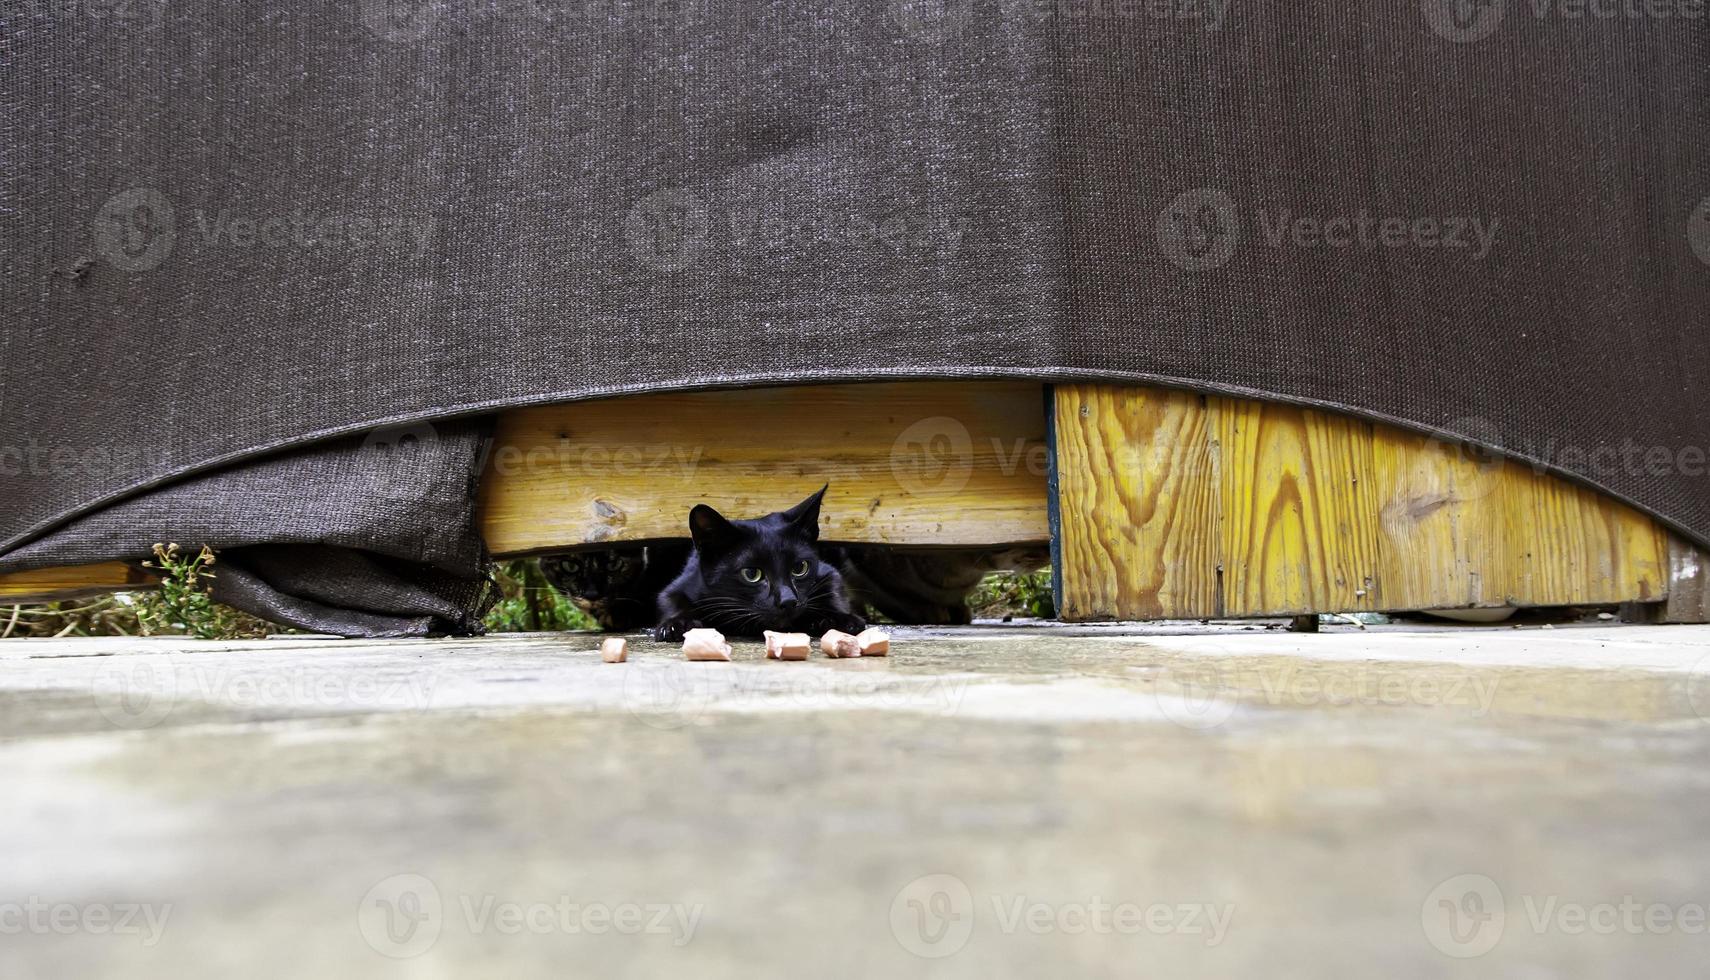 gatos callejeros comiendo en la calle foto